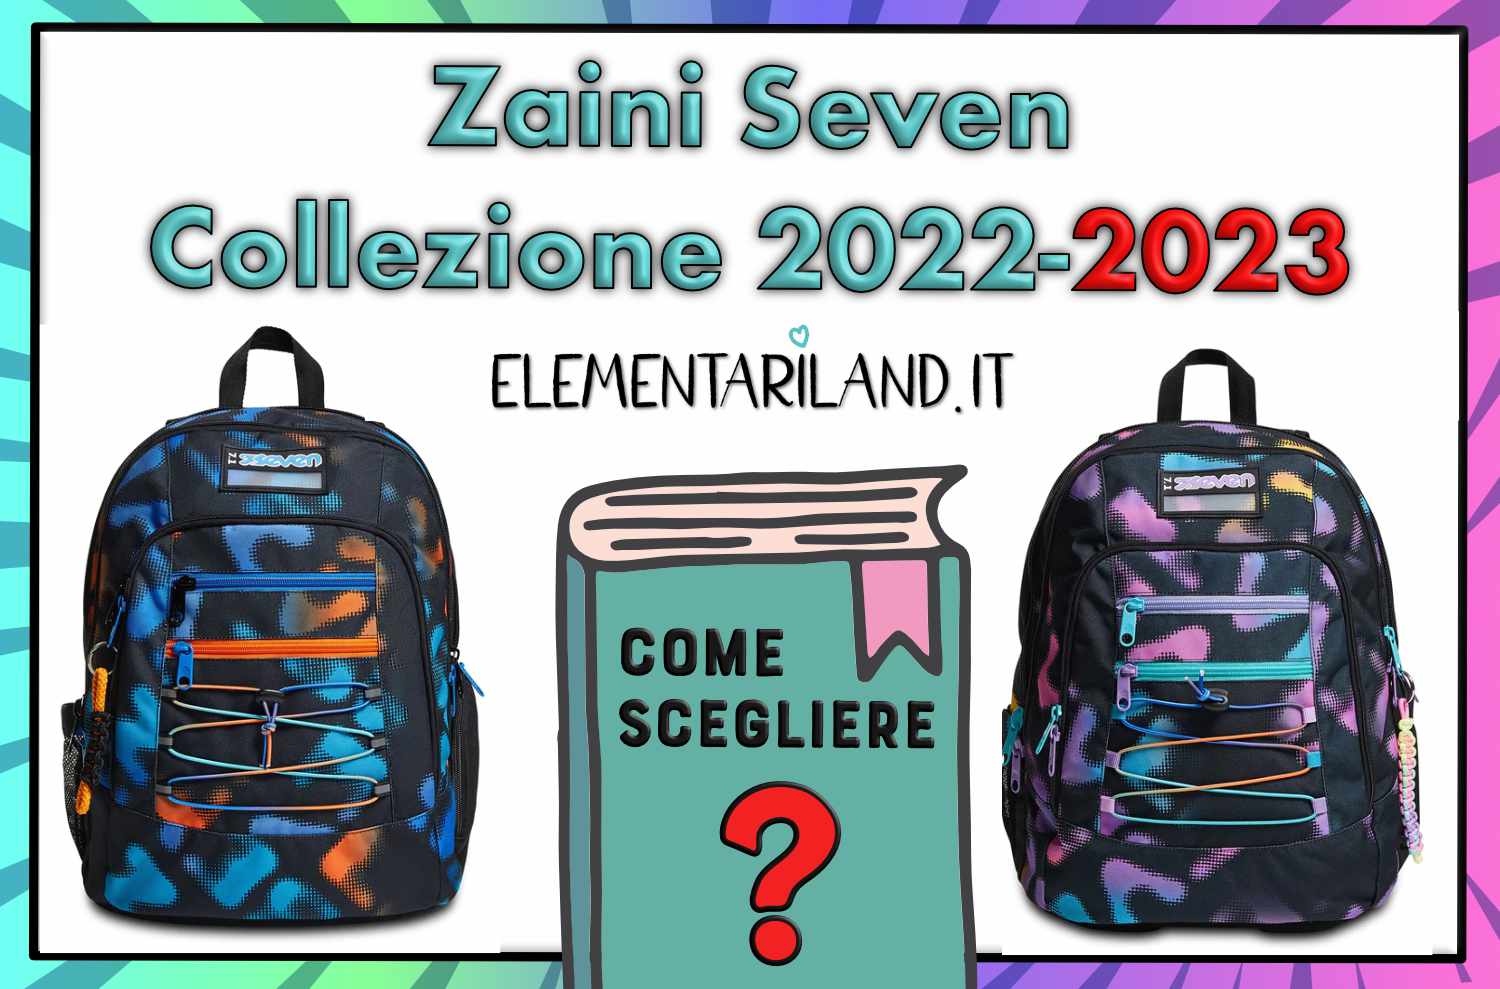 Zaini Seven 2022-2023